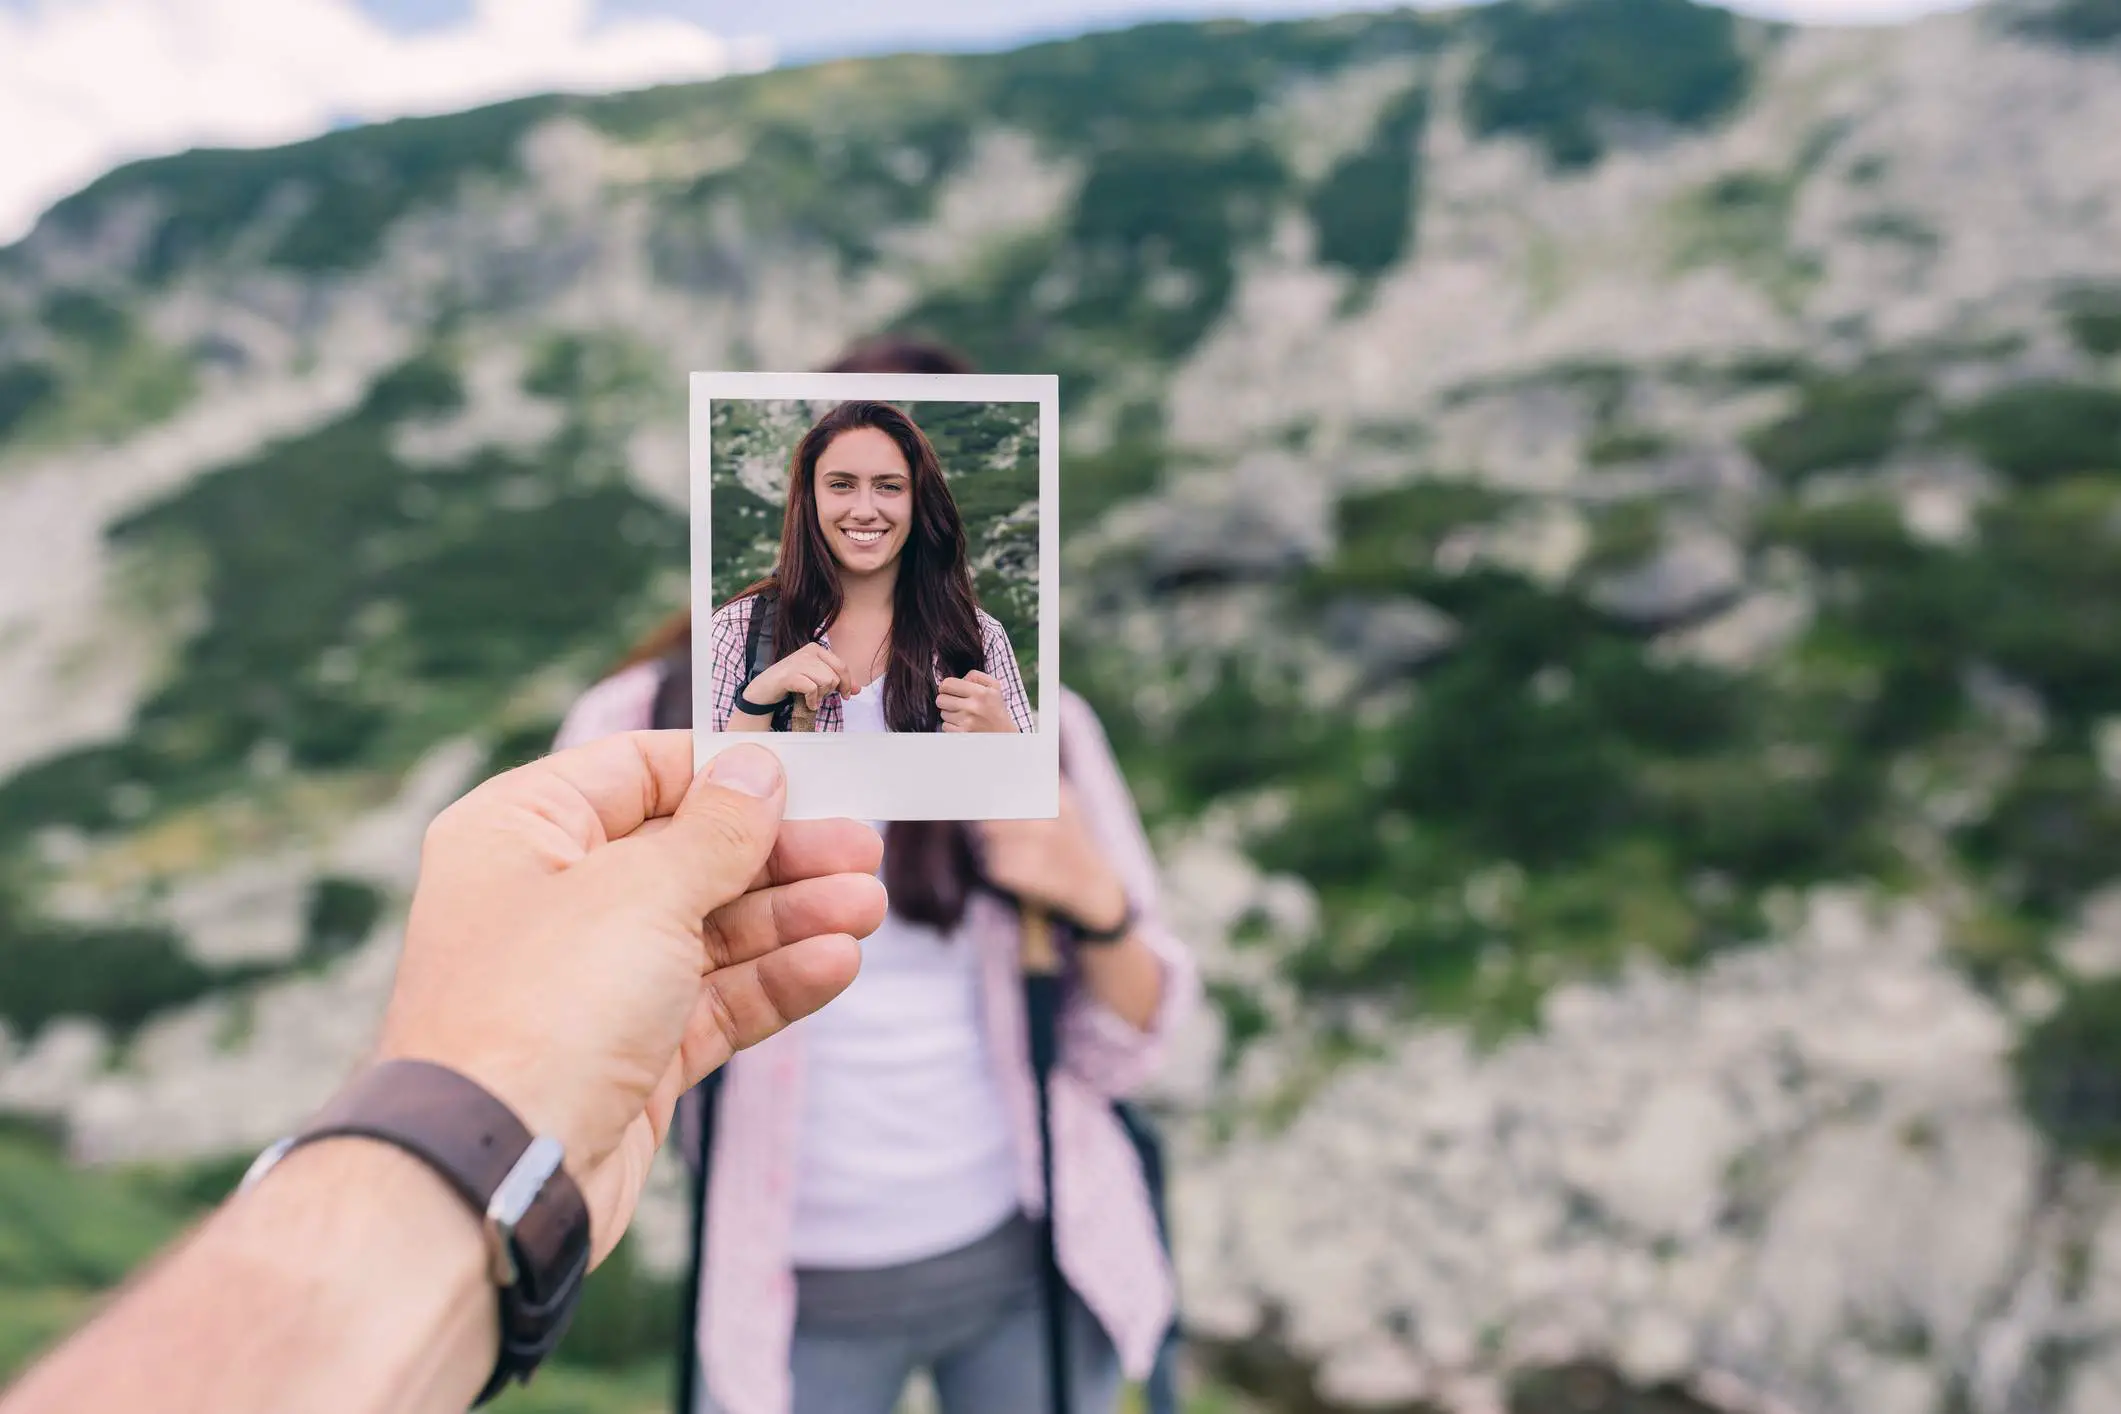 Uma pessoa segurando uma fotografia na frente da pessoa na fotografia.